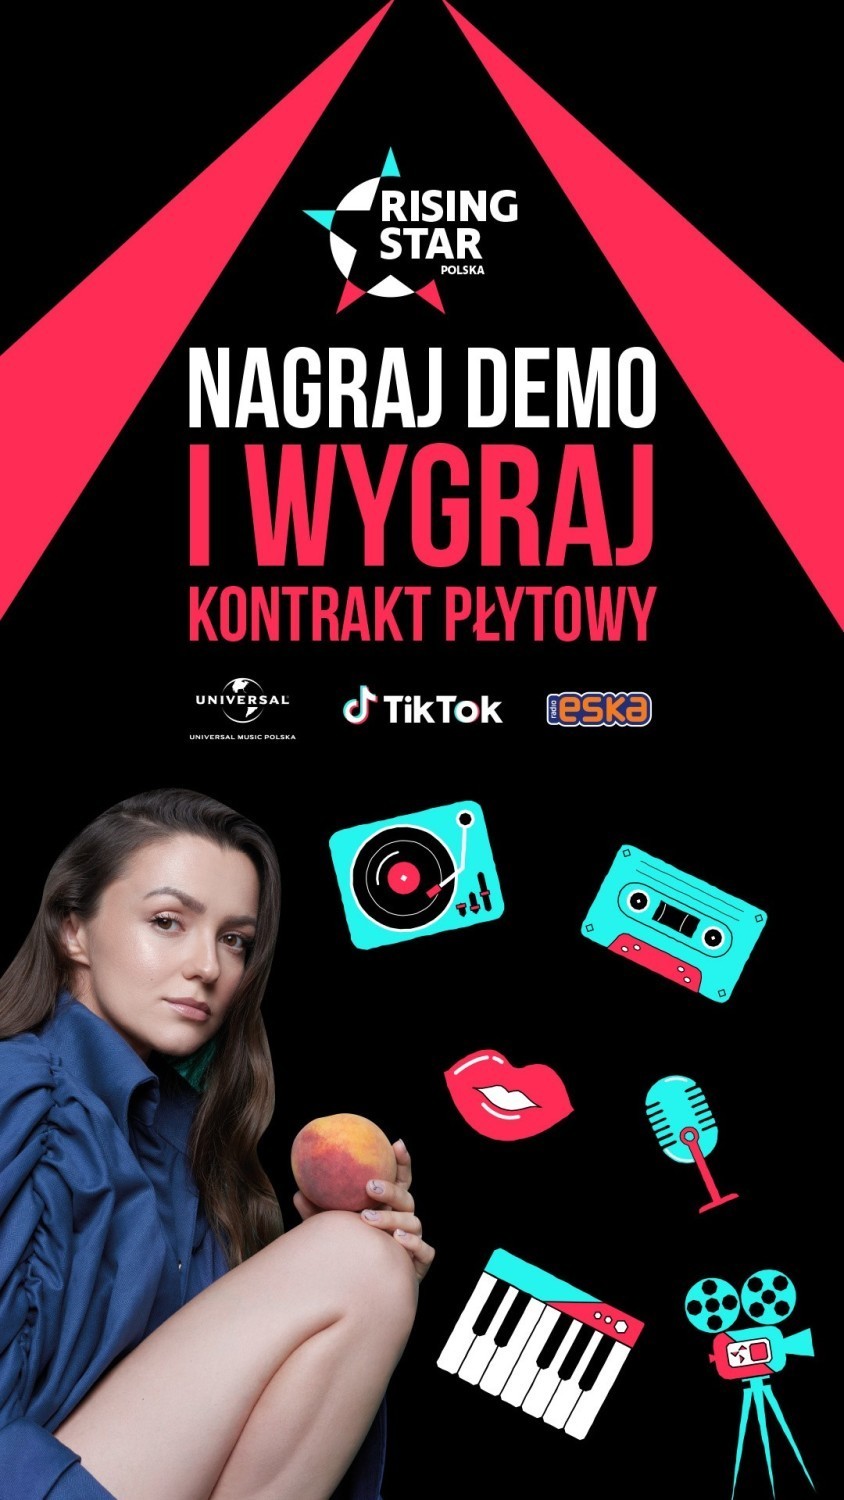 TikTok i Universal Music Polska zapraszają na wielki konkurs „Rising Star”. Nagraj demo i umieść na swoim TikToku [#risingstarpolska]